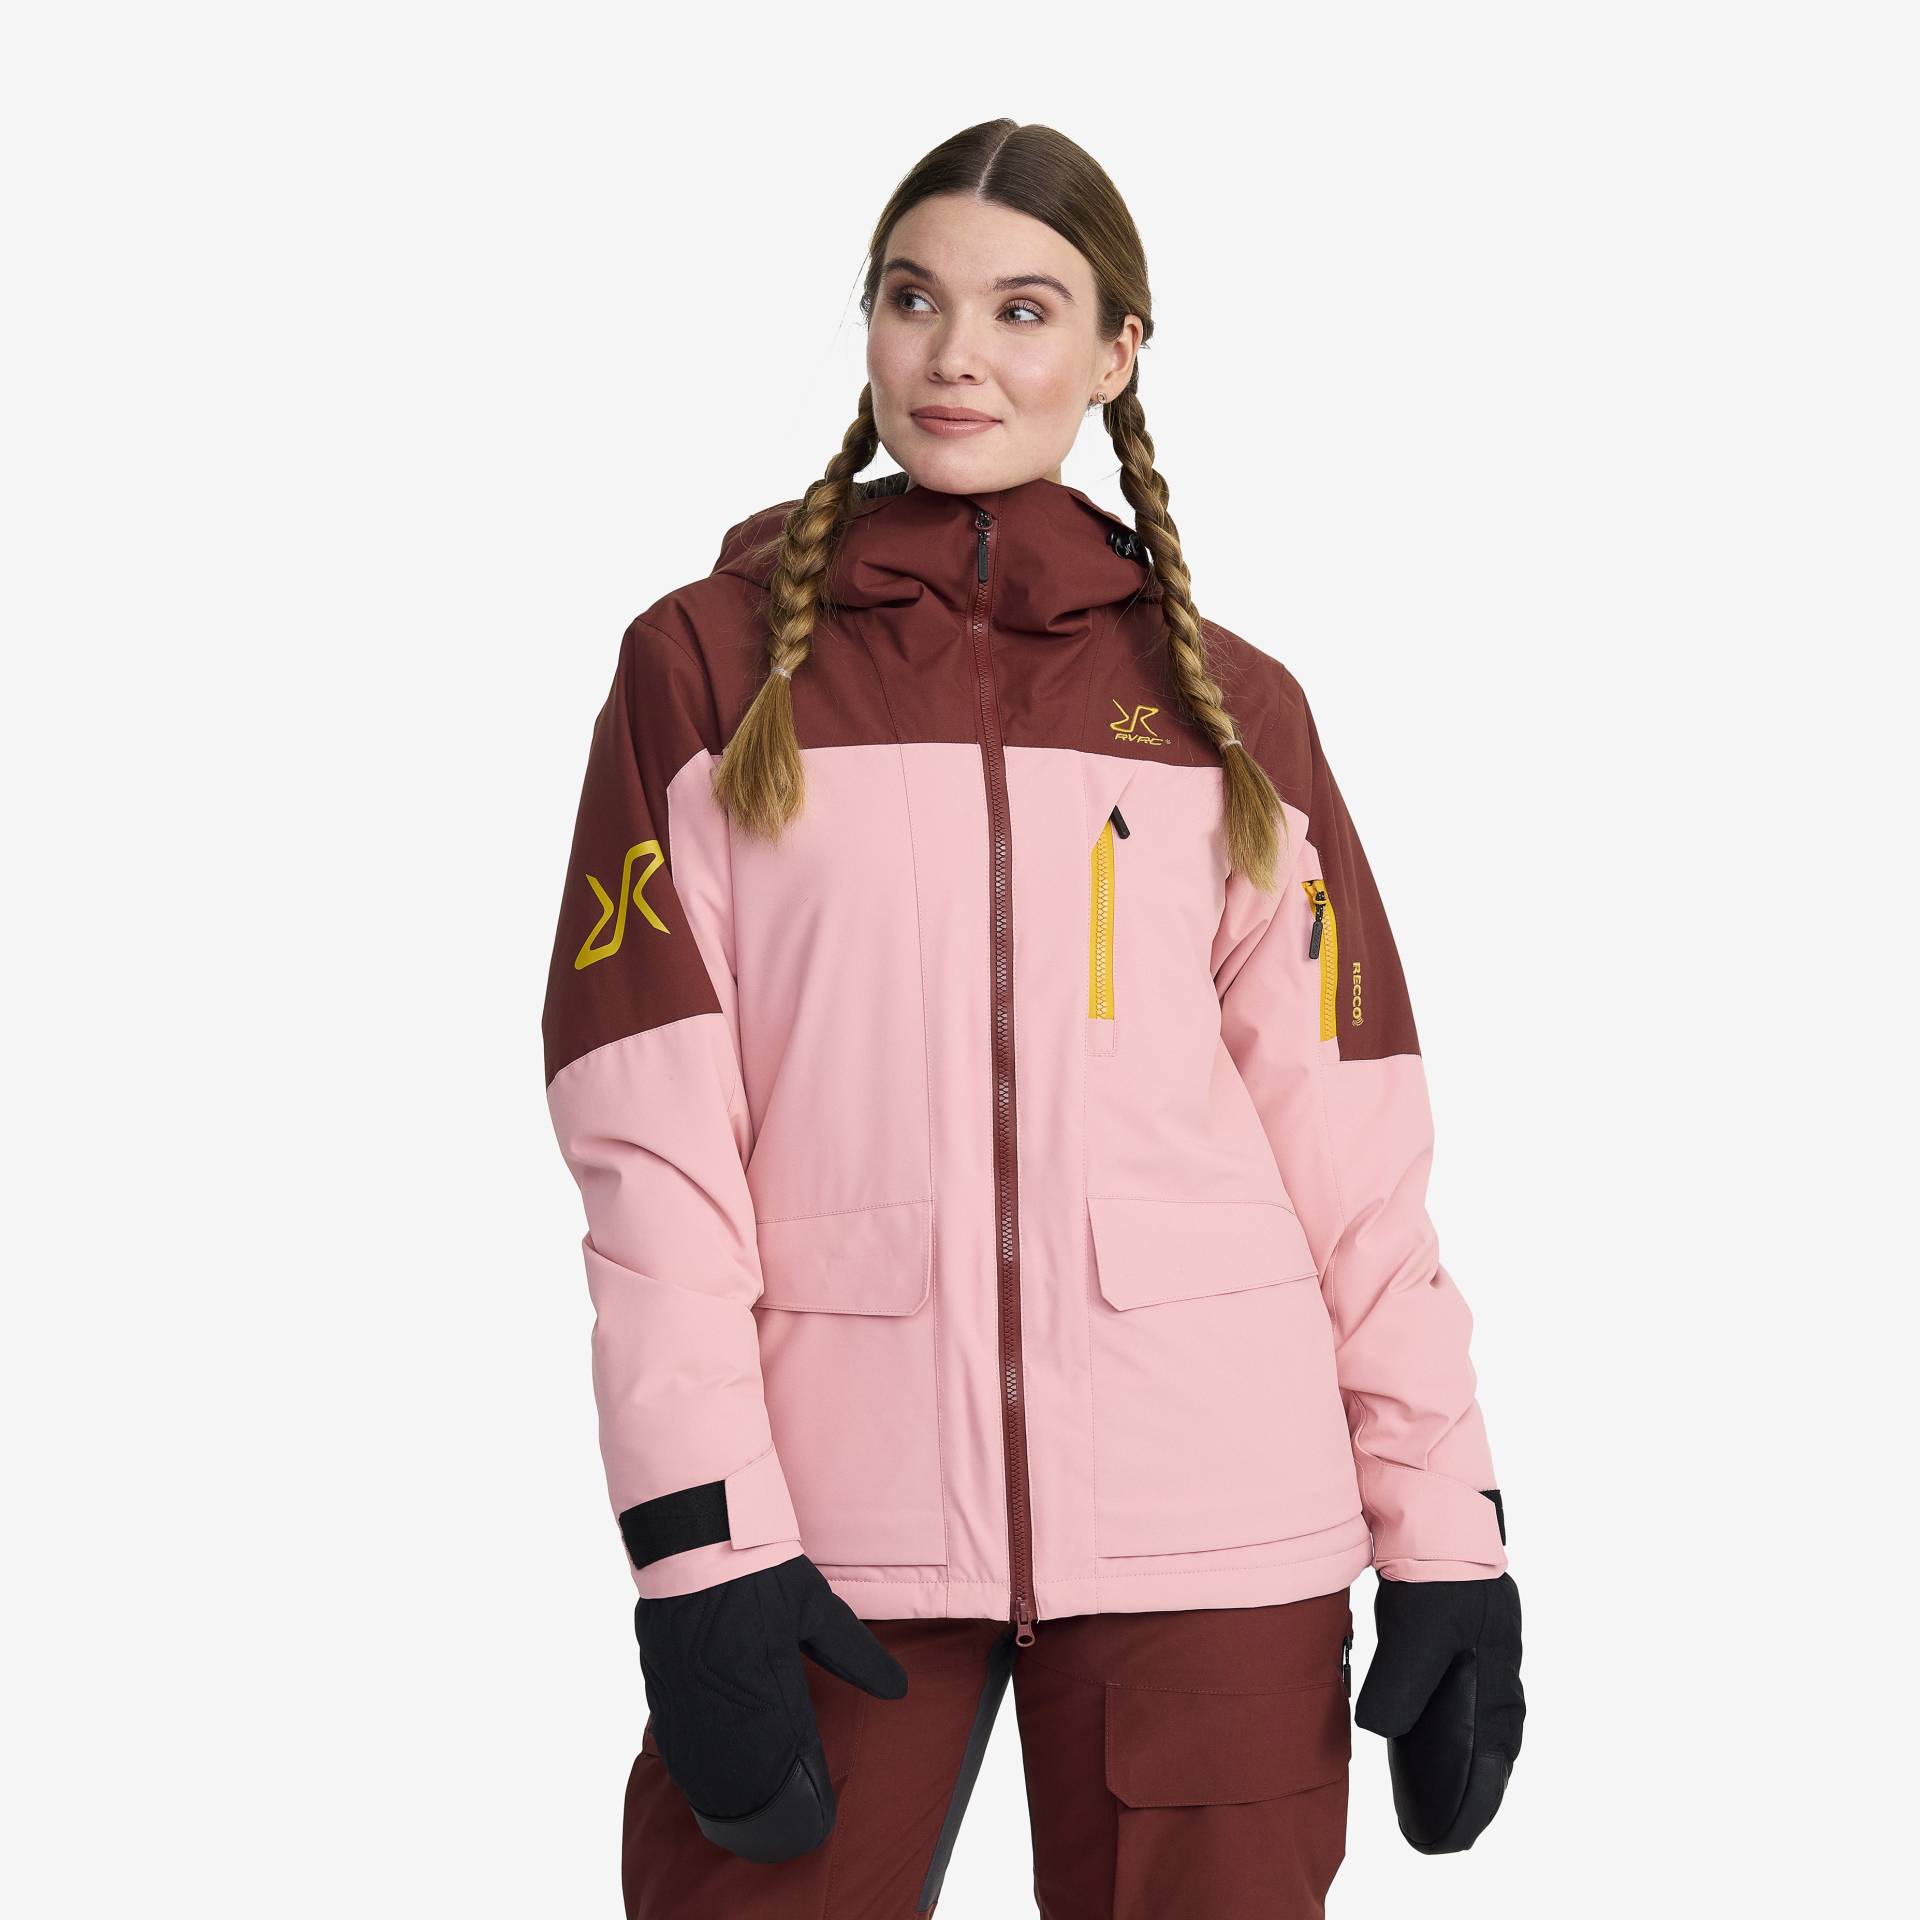 Halo 2L Insulated Ski Jacket Damen Blush, Größe:L - Skijacken von RevolutionRace